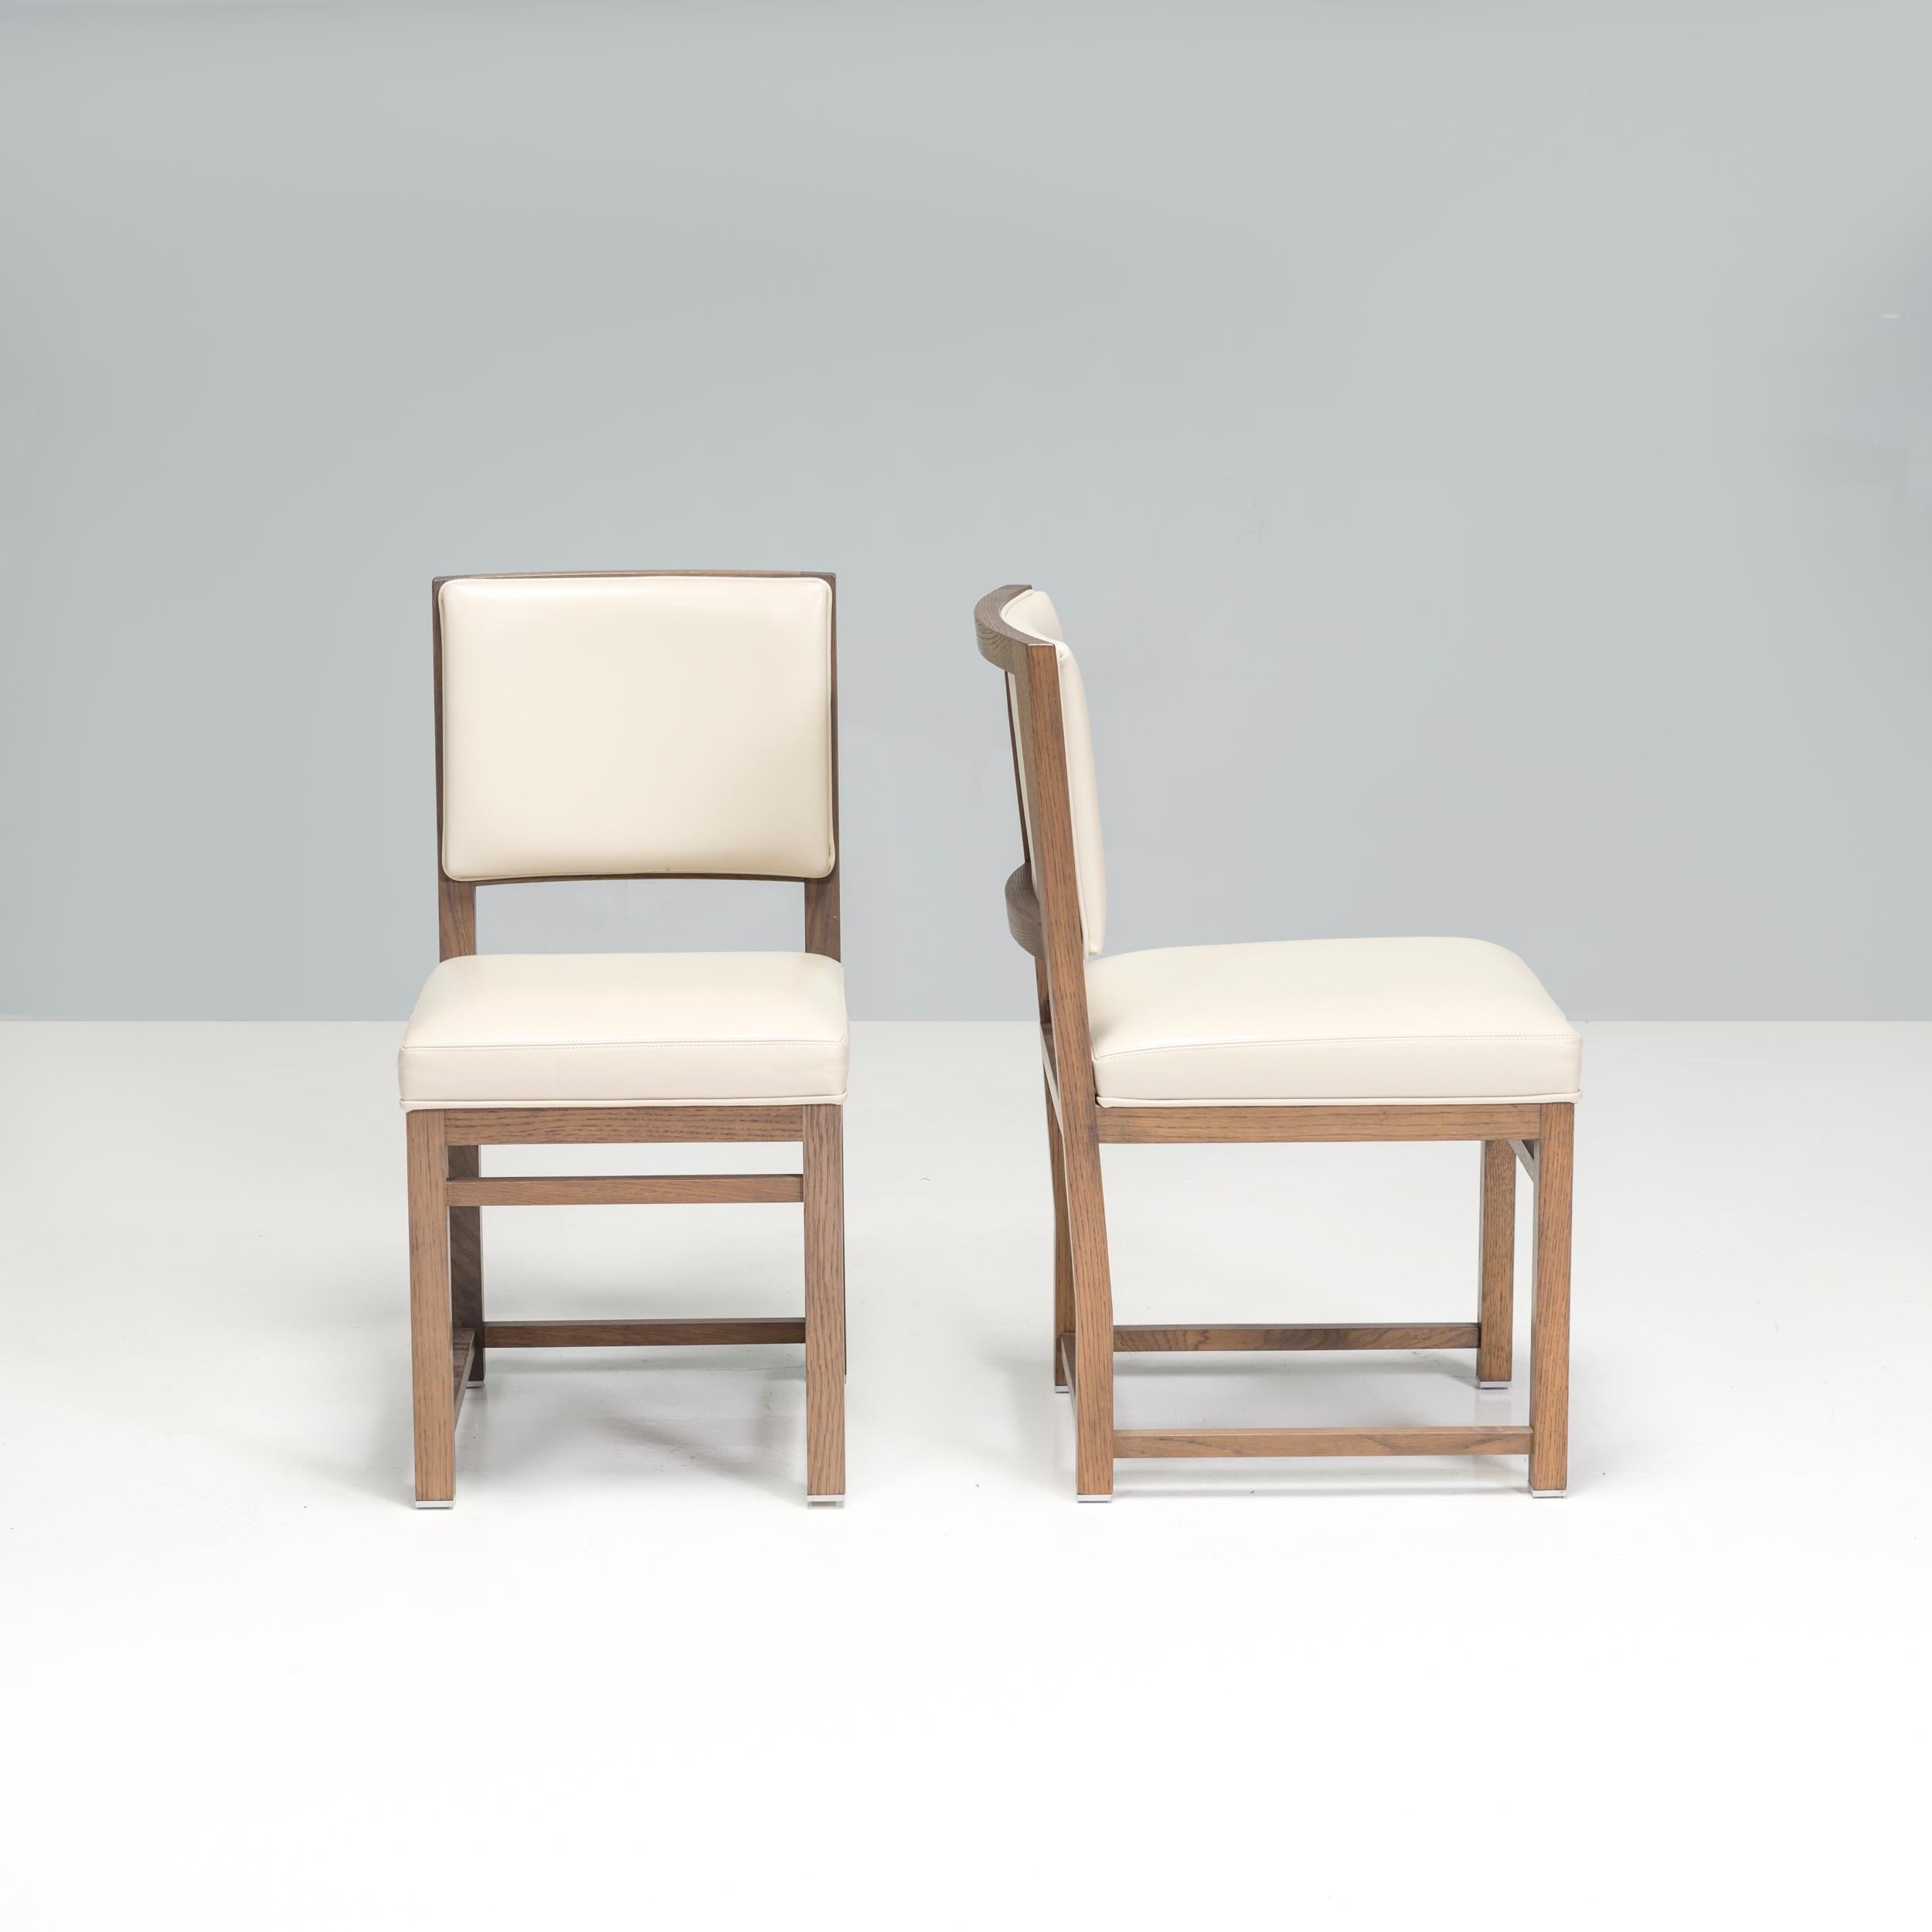 Conçue à l'origine par Antonio Citterio en 2008 pour sa Collection Maxalto Simplice, la chaise de salle à manger Musa est un fantastique exemple de design italien contemporain.

Fabriquées à partir d'une structure en chêne gris, les chaises